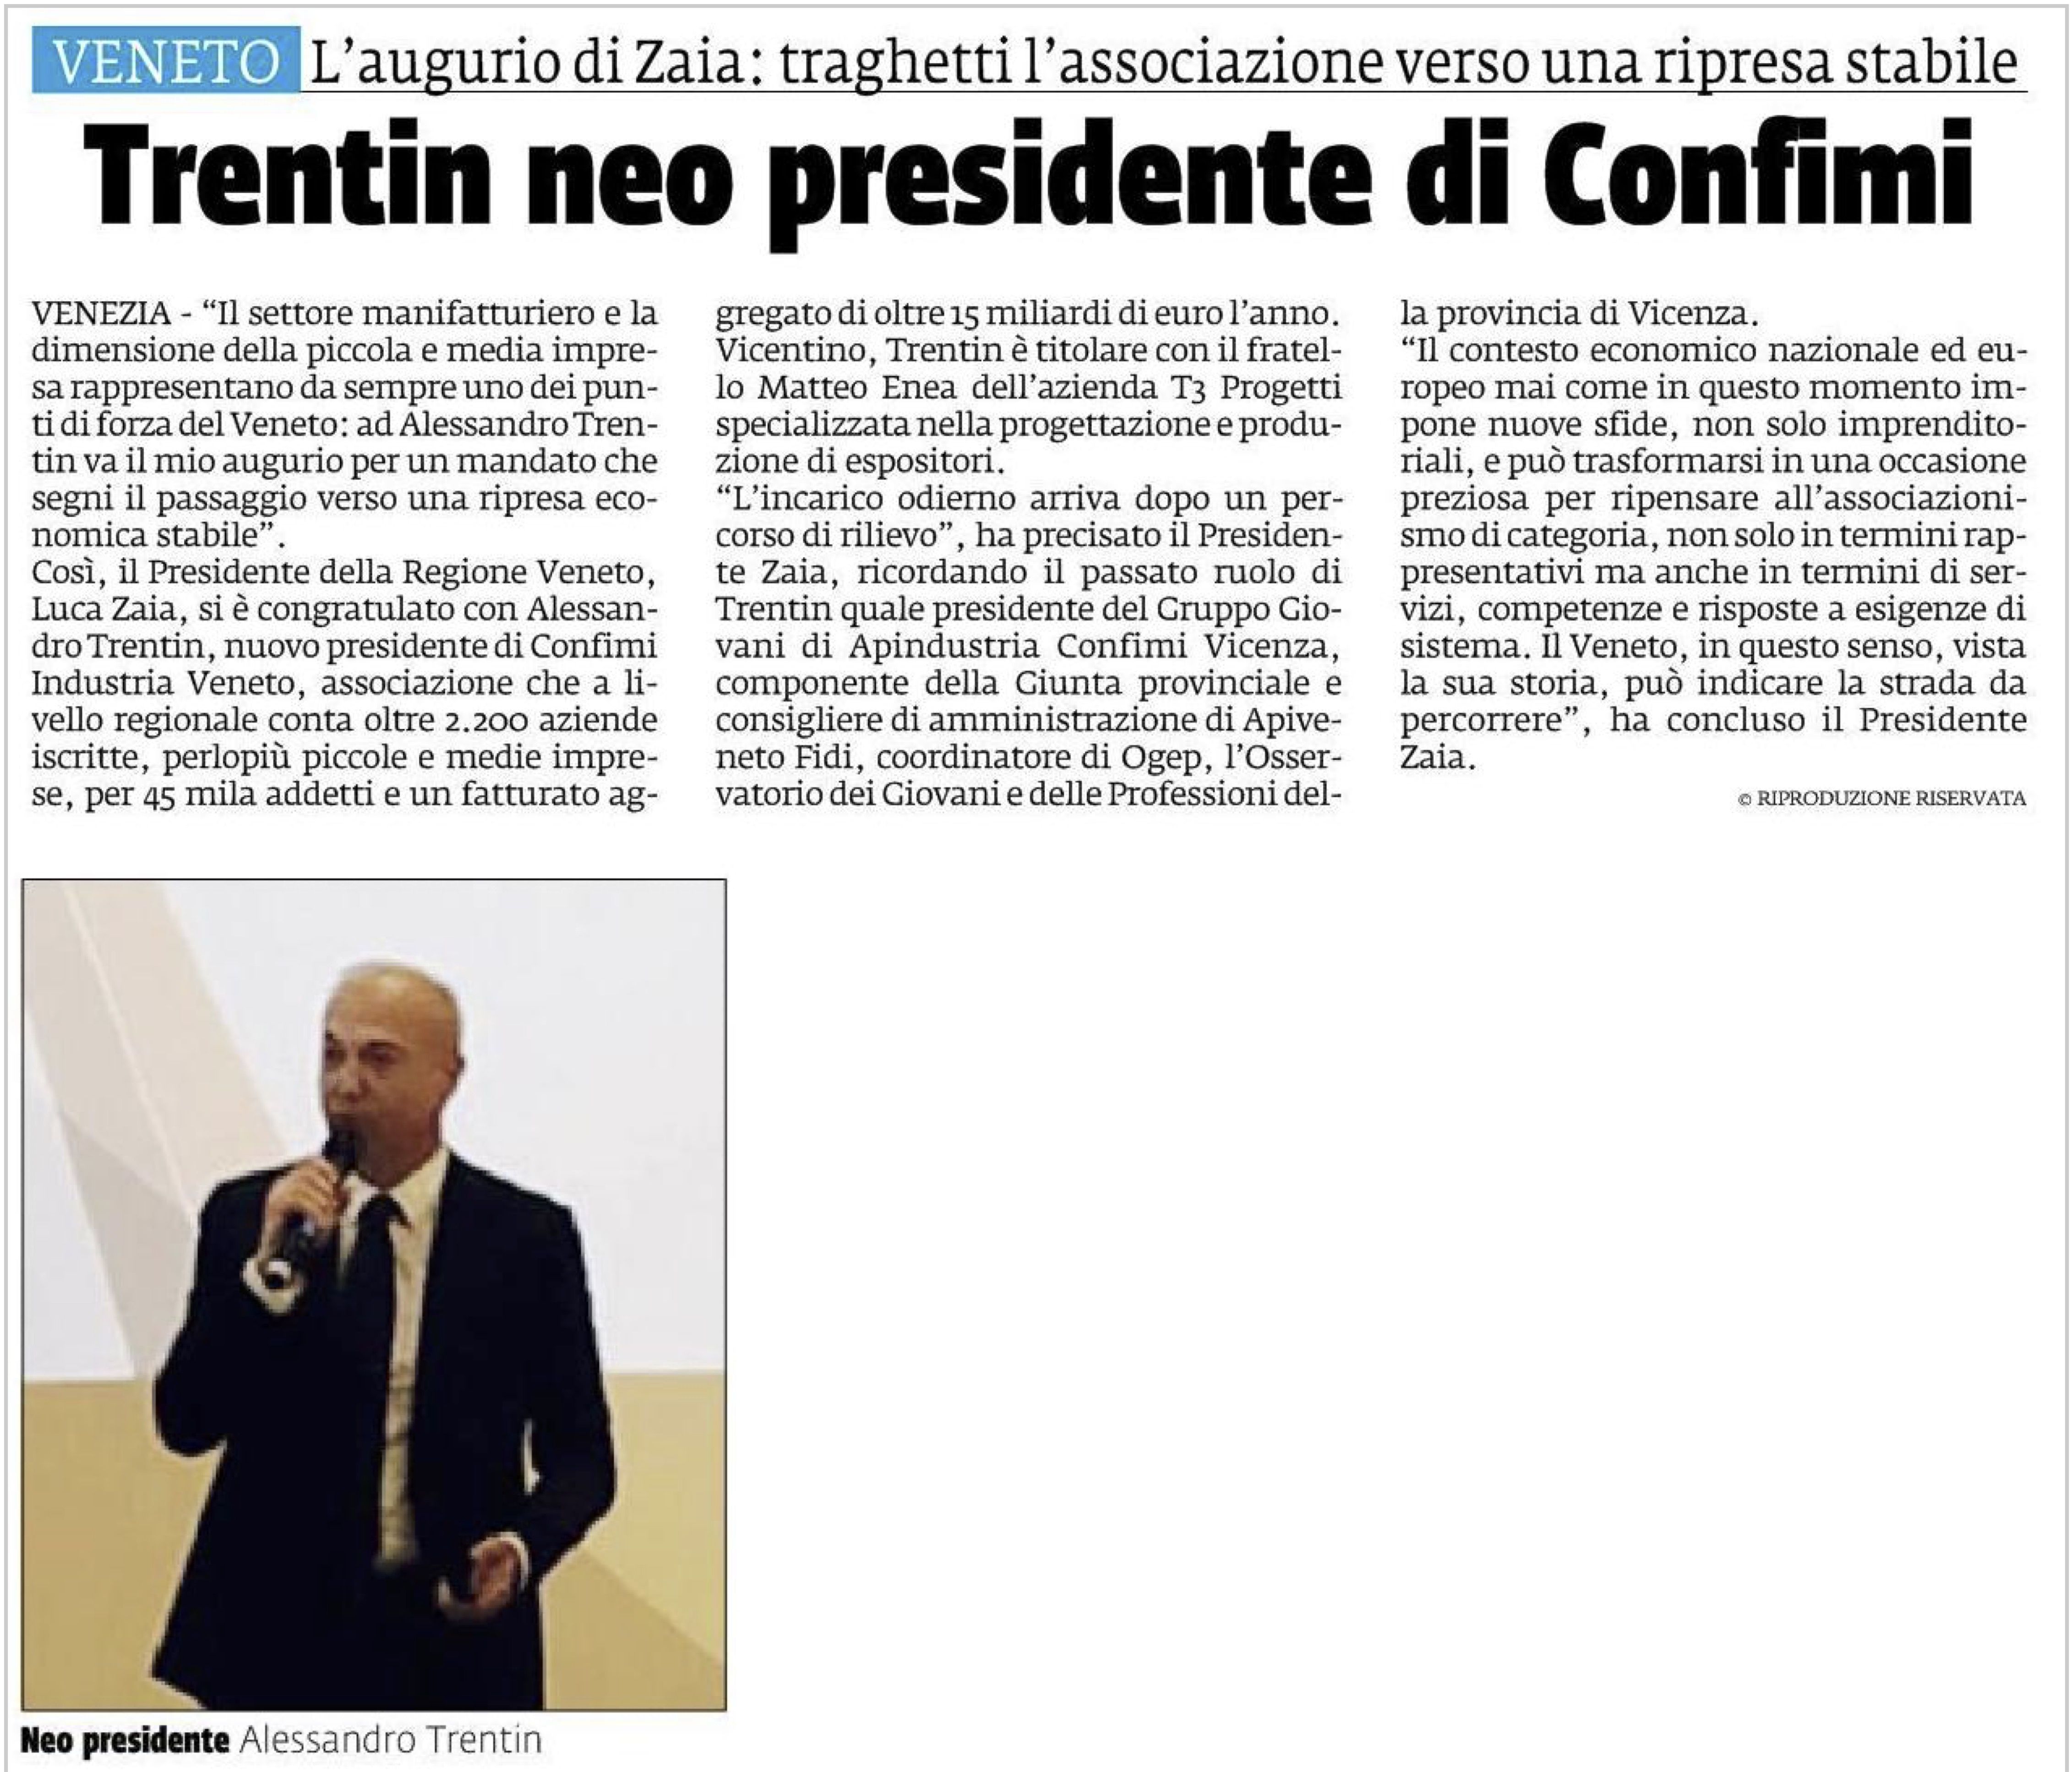 Le congratulazioni di Luca Zaia al nuovo Presidente di Confimi Industria Veneto Alessandro Trentin